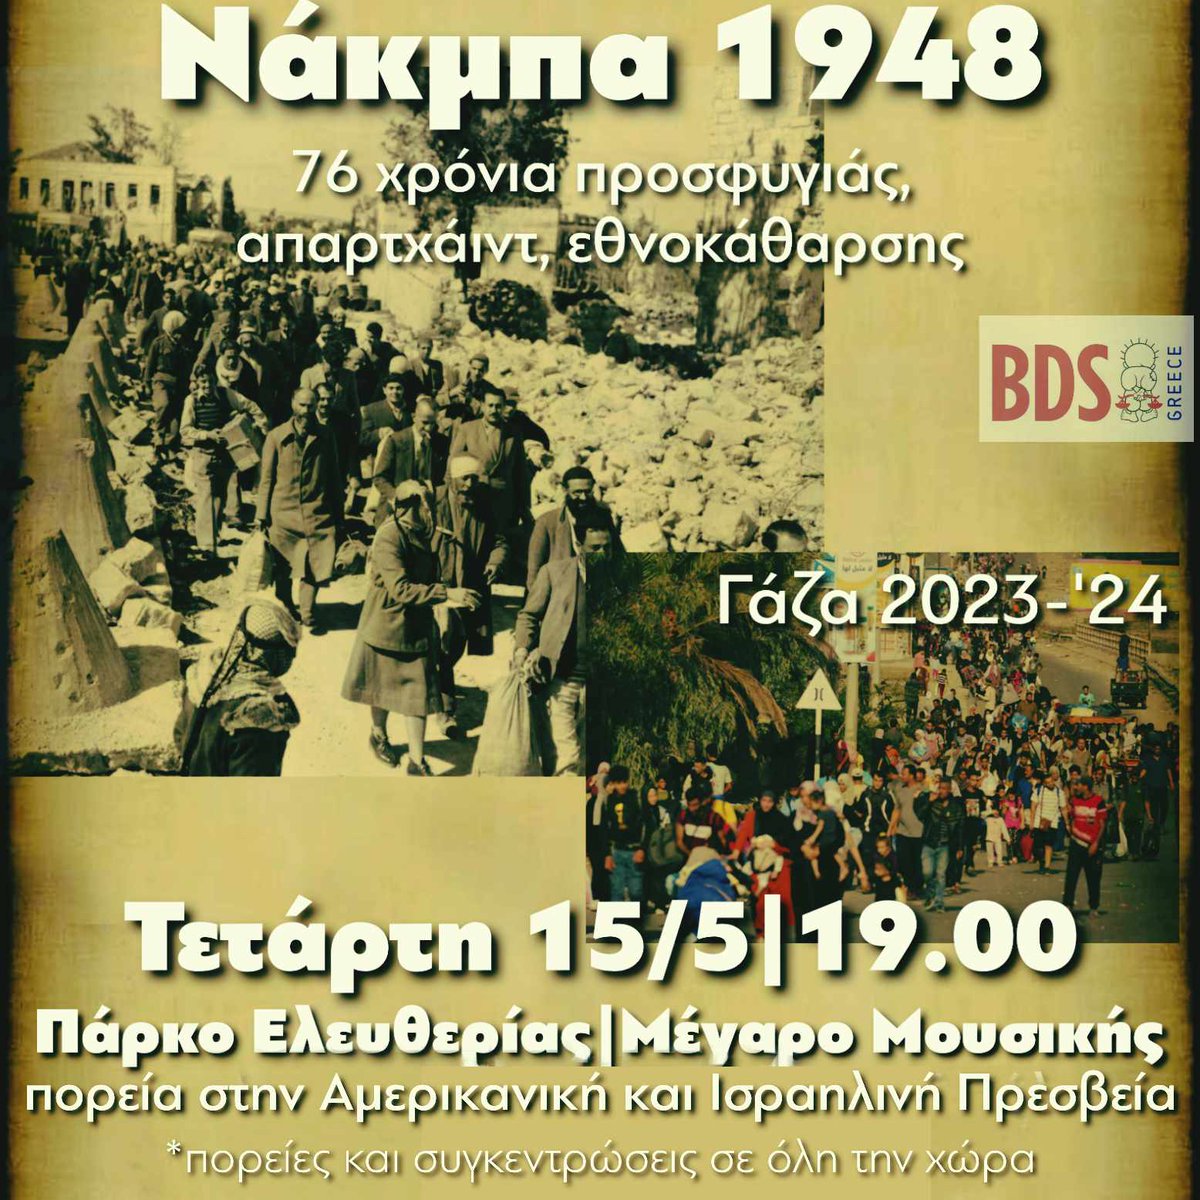 ΣΗΜΕΡΑ, Τετάρτη 15 Μάη 2024 στις 19:00 στο Πάρκο Ελευθερίας. Συγκέντρωση και πορεία στην Αμερικάνικη και Ισραηλινή πρεσβεία για τα 76 χρόνια της ΝΑΚΜΠΑ.